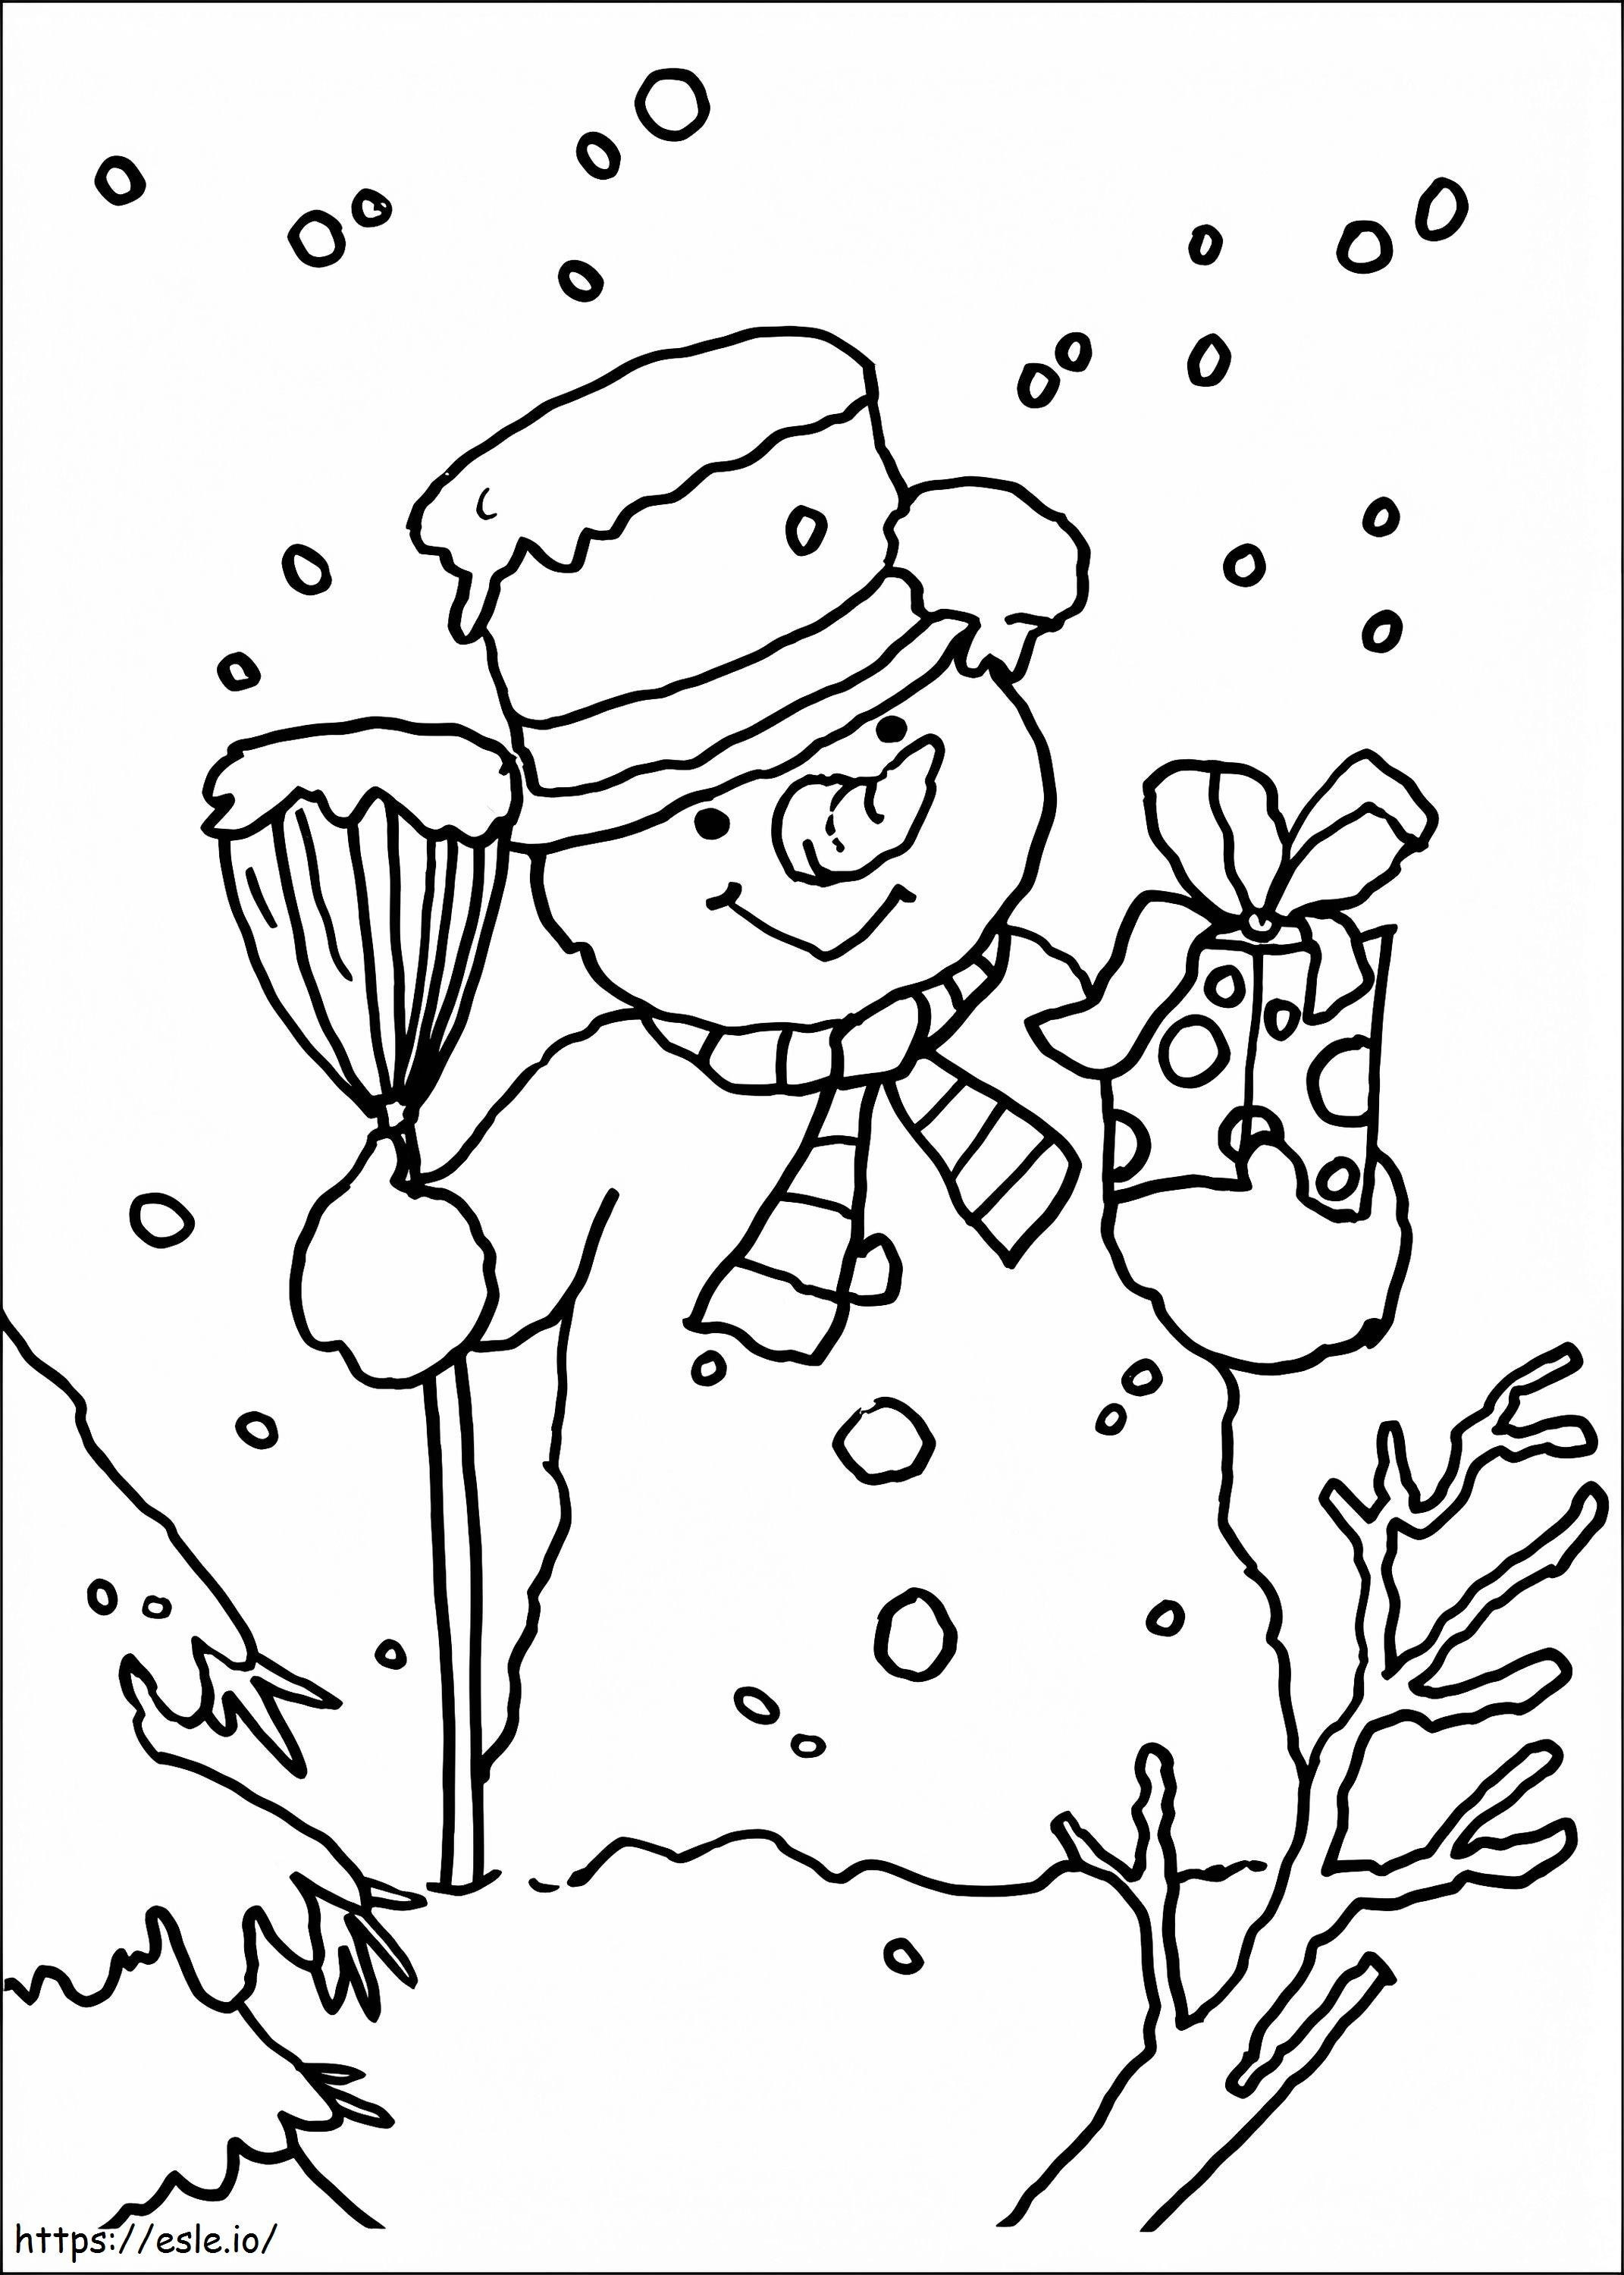 1534391418 Sneeuwpop met cadeau kleurplaat kleurplaat